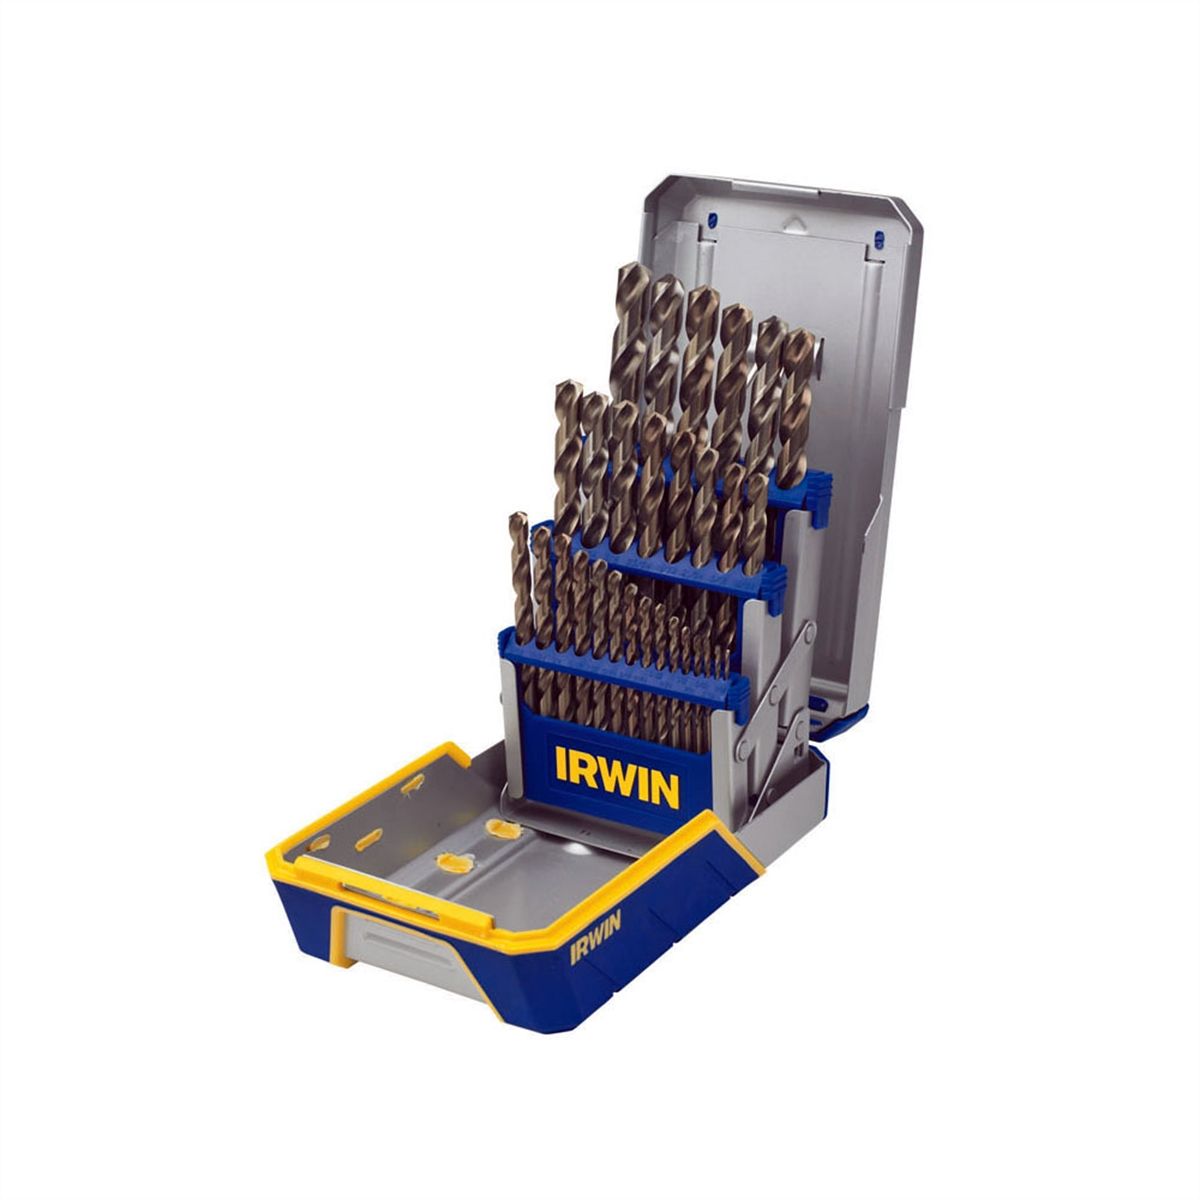 Hanson 3018002B Cobalt M-42 Metal Index Drill Bit Set w/ Industr